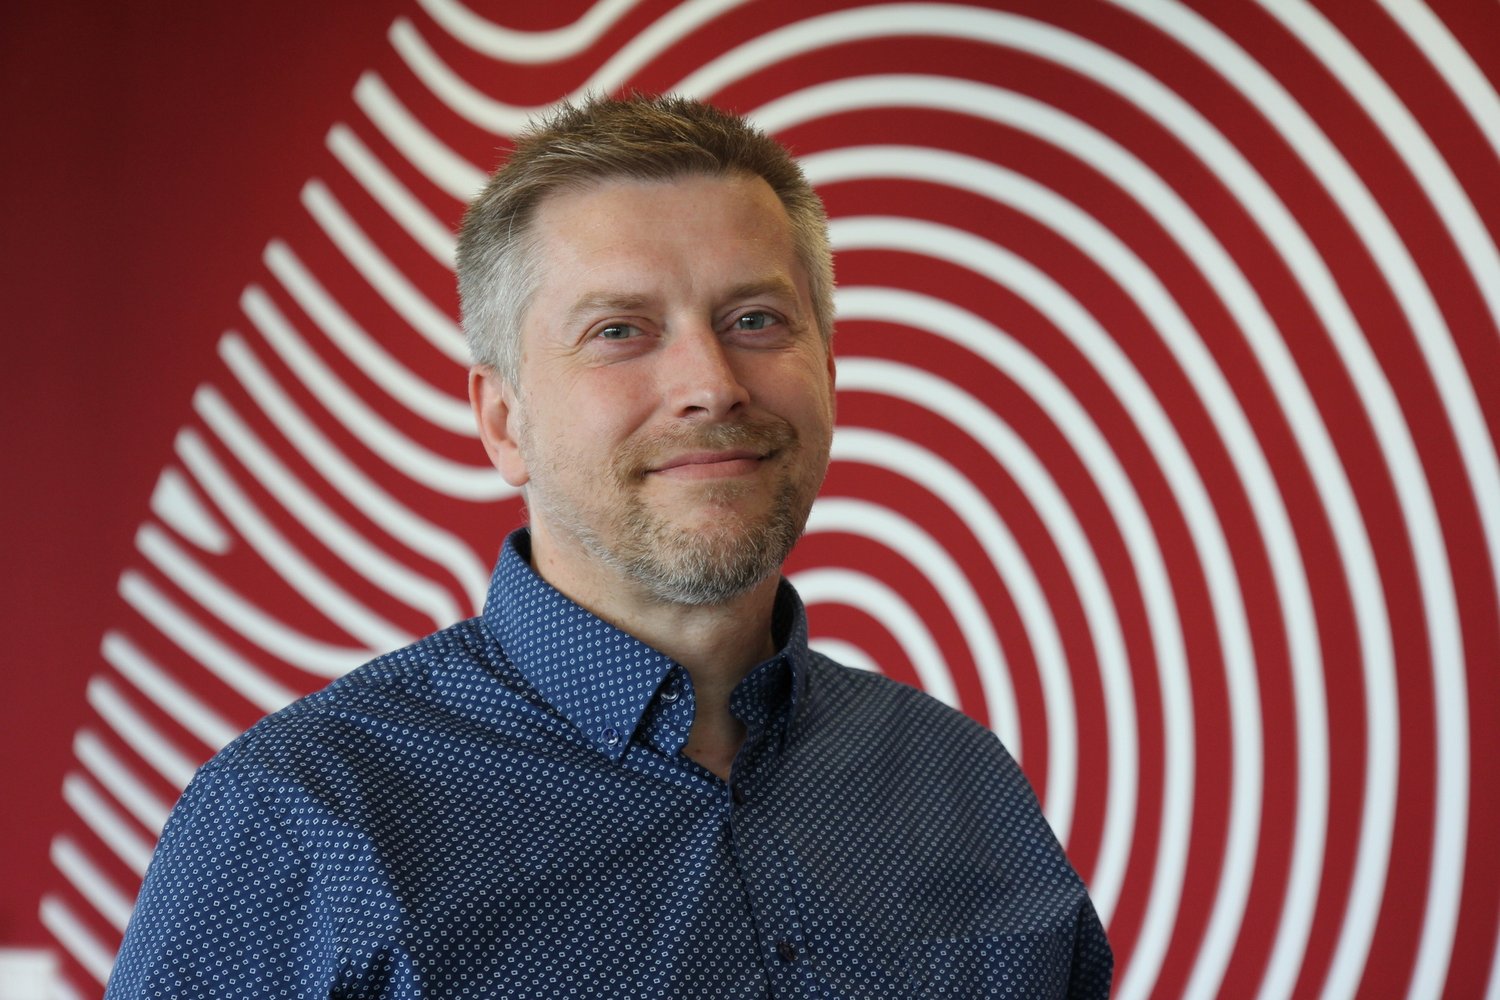 Marek Durian, Manager of Integration & Technology - NNIT Czech